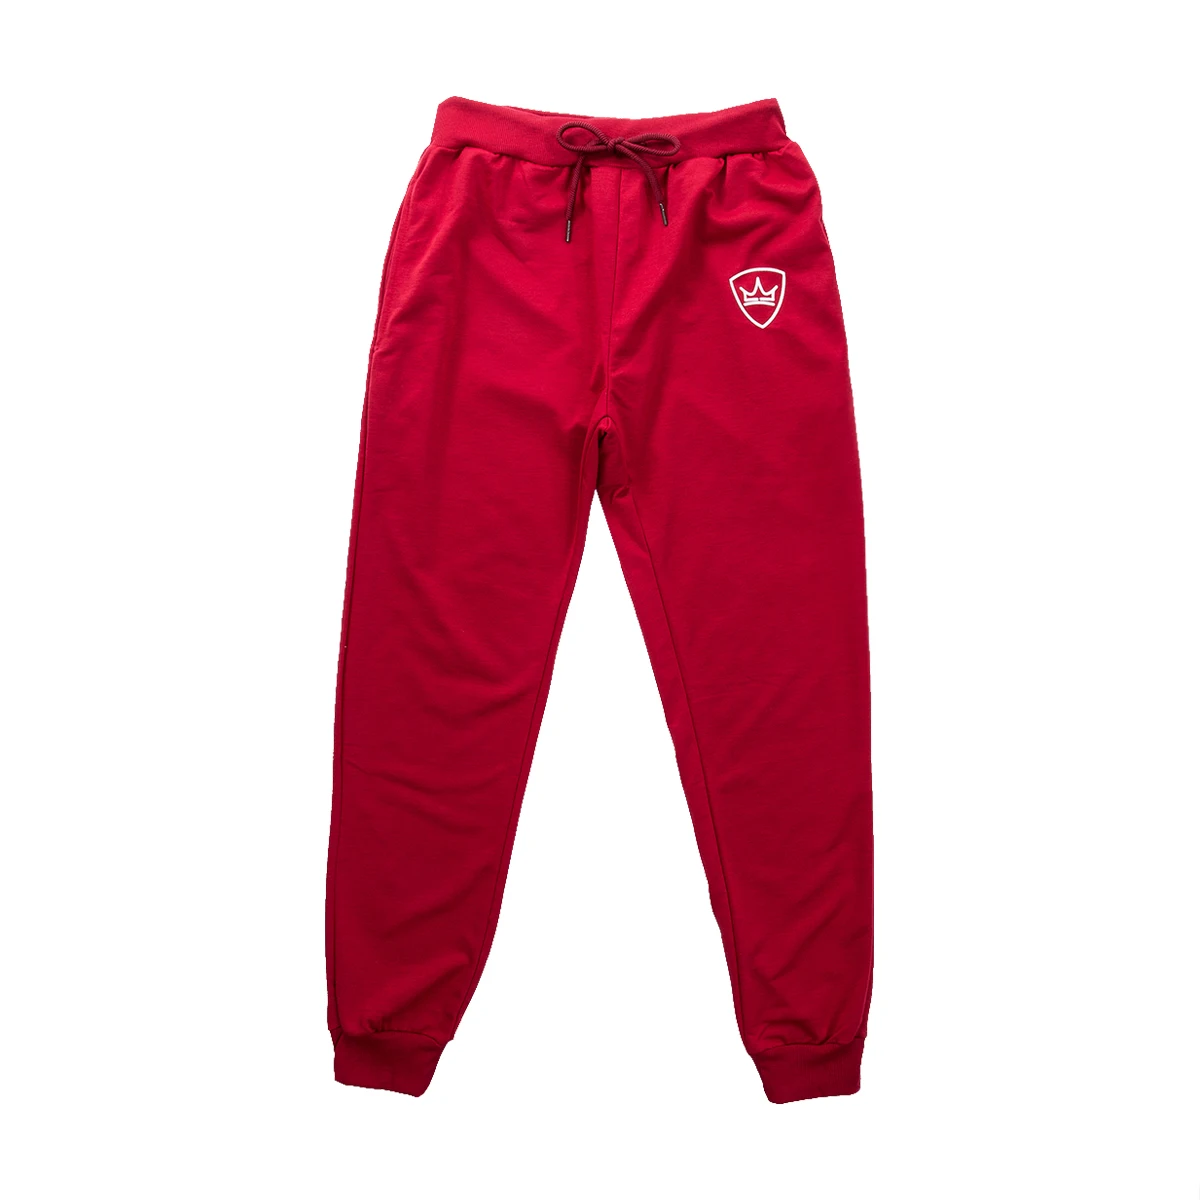 Новые модные мужские длинные спортивные штаны, обтягивающие брюки для спортзала, беговые бегуны, обтягивающие спортивные штаны, черные, серые, зеленые, красные - Цвет: Красный